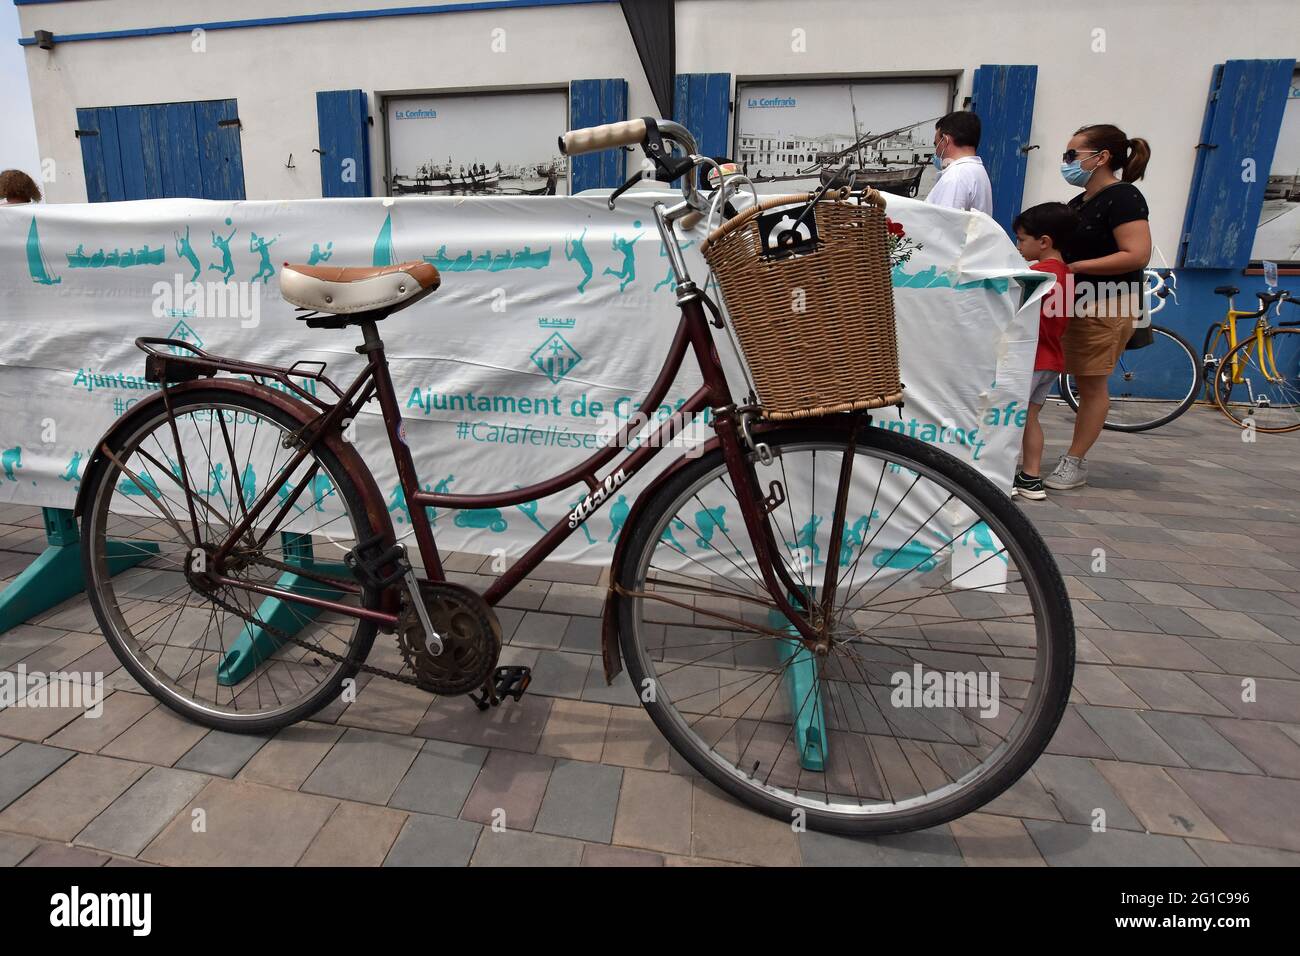 Una bicicleta de la marca italiana Atala de 1950 vista durante la  exposición.La exposición clásica e histórica de bicicletas de 1st se  celebró con bicicletas de diferentes propietarios privados que datan de